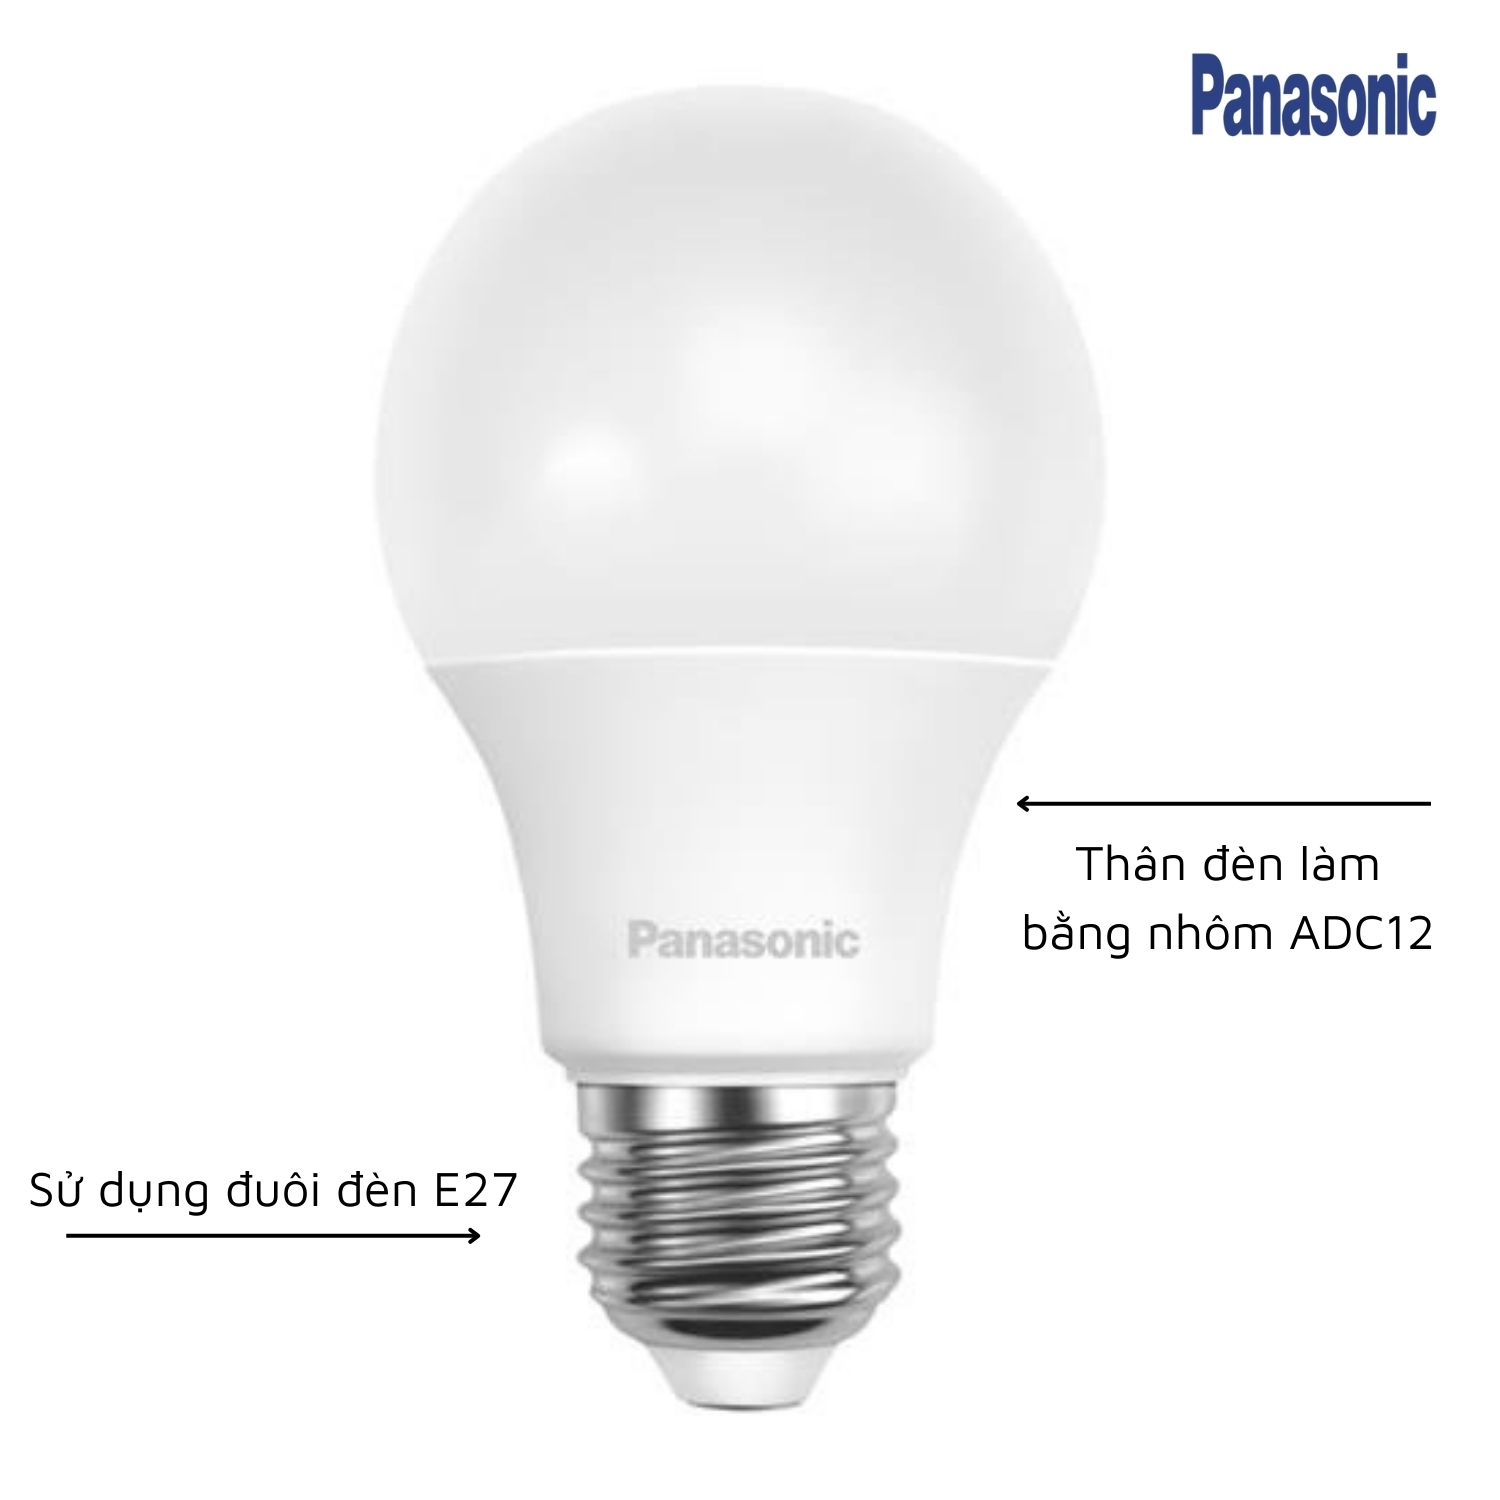 Panasonic - Đèn LED Bulb Neo Series 15W | LDAHV15LH6T / LDAHV15DH6T